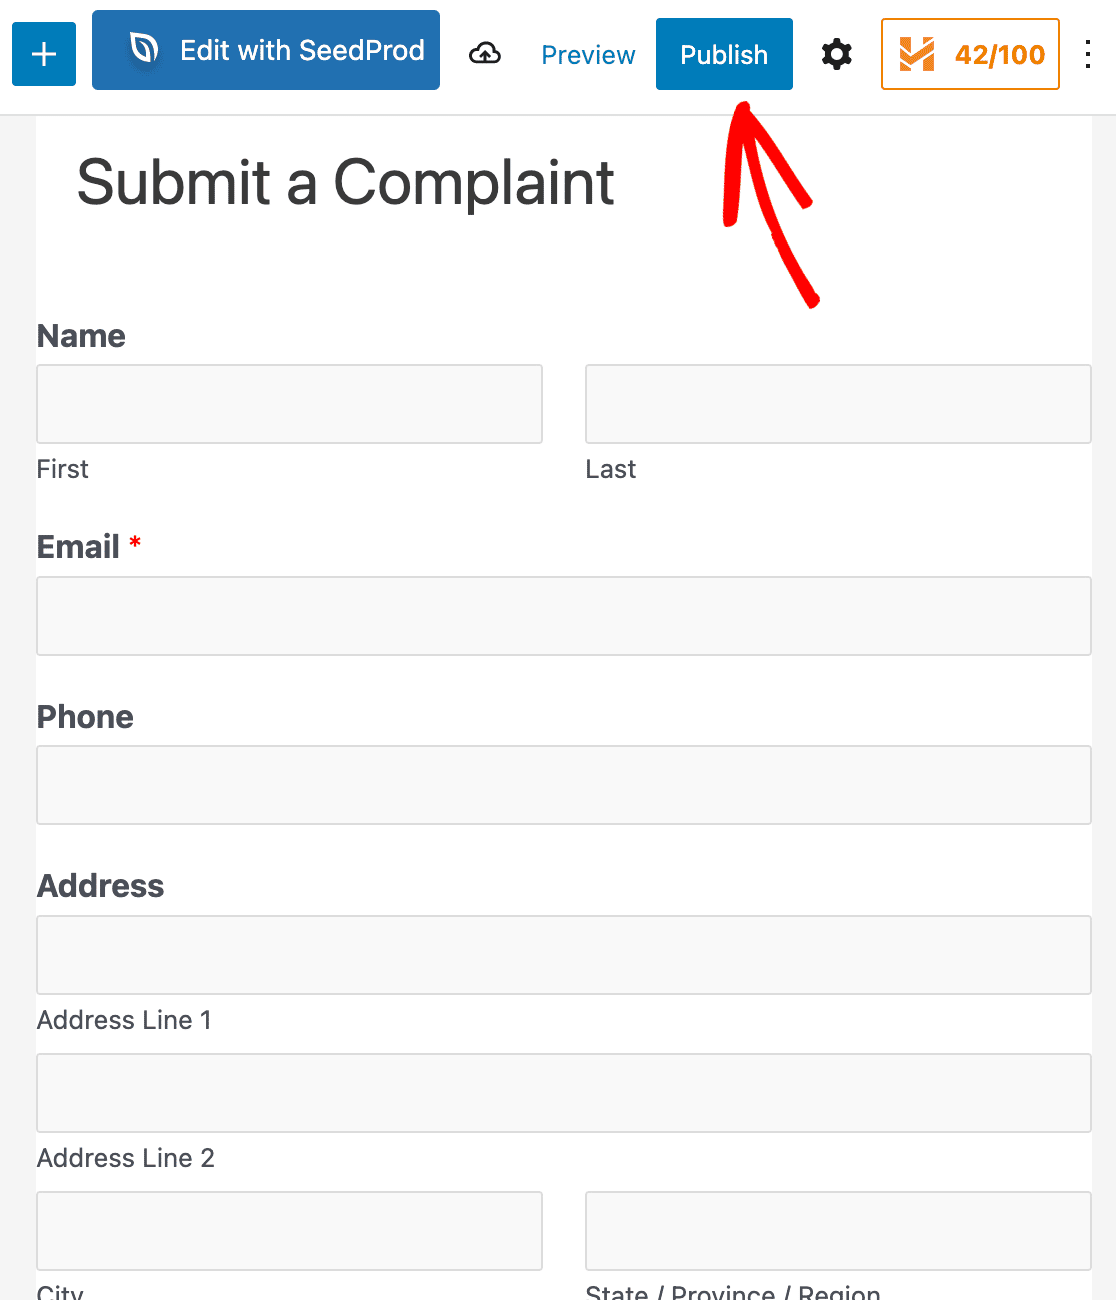 Publishing your complaint form